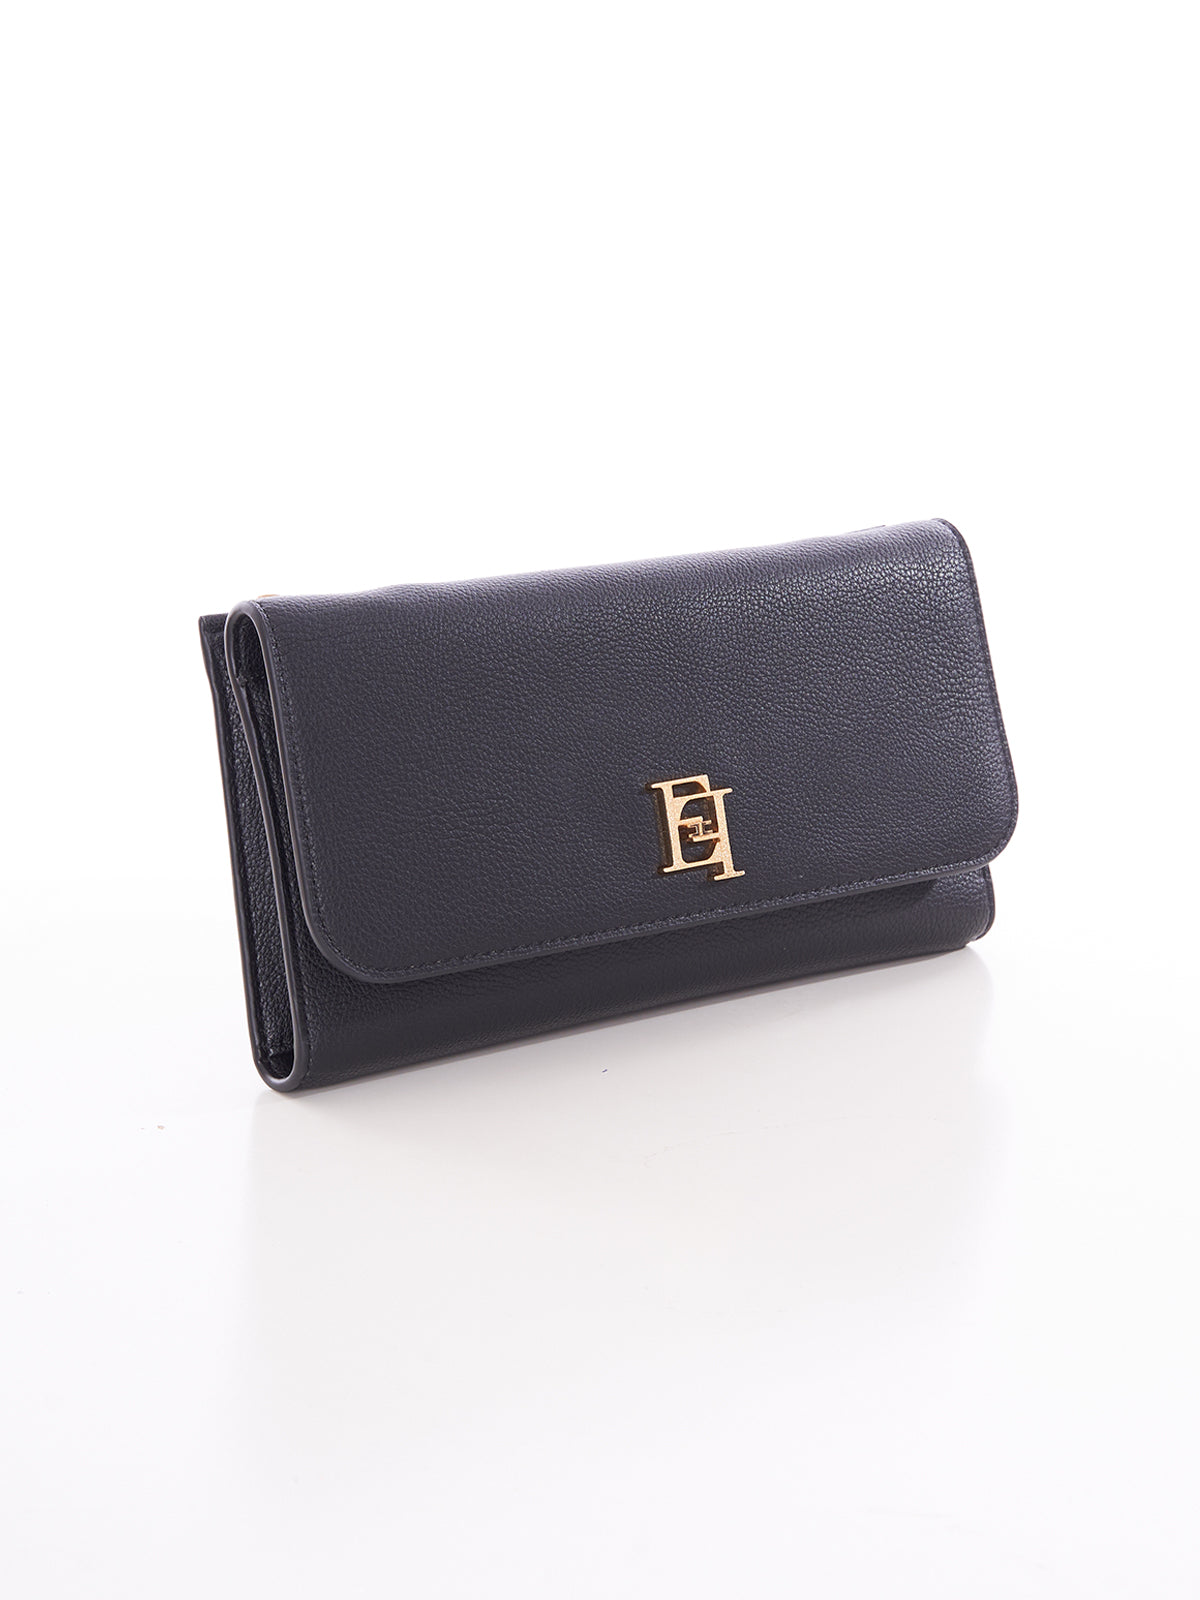 Wallet with shoulder strap with Elisabetta Franchi metal logo